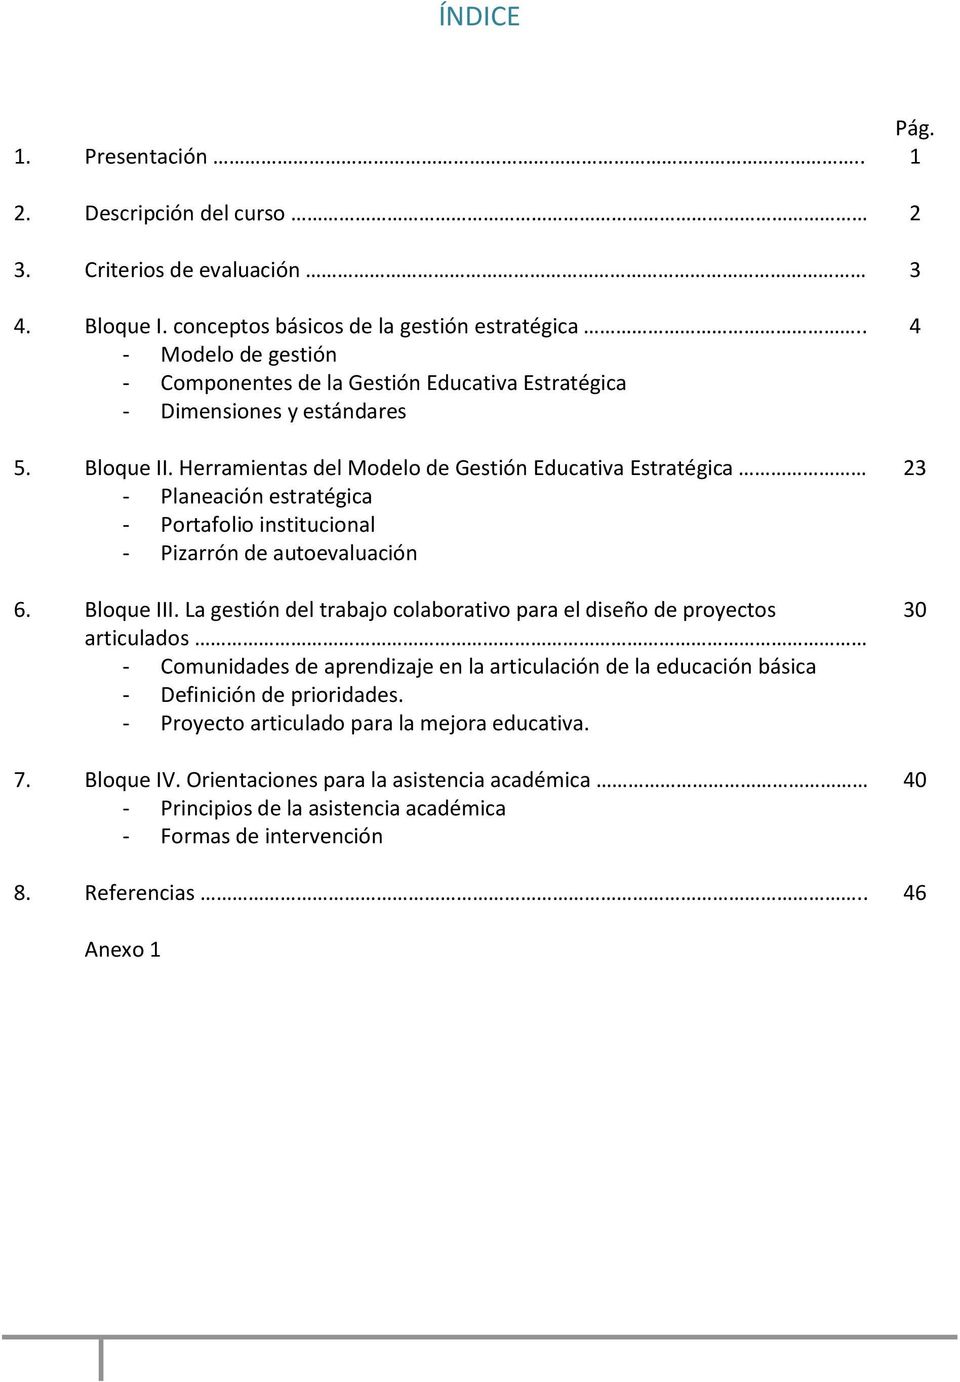 Herramientas del Modelo de Gestión Educativa Estratégica - Planeación estratégica - Portafolio institucional - Pizarrón de autoevaluación 6. Bloque III.